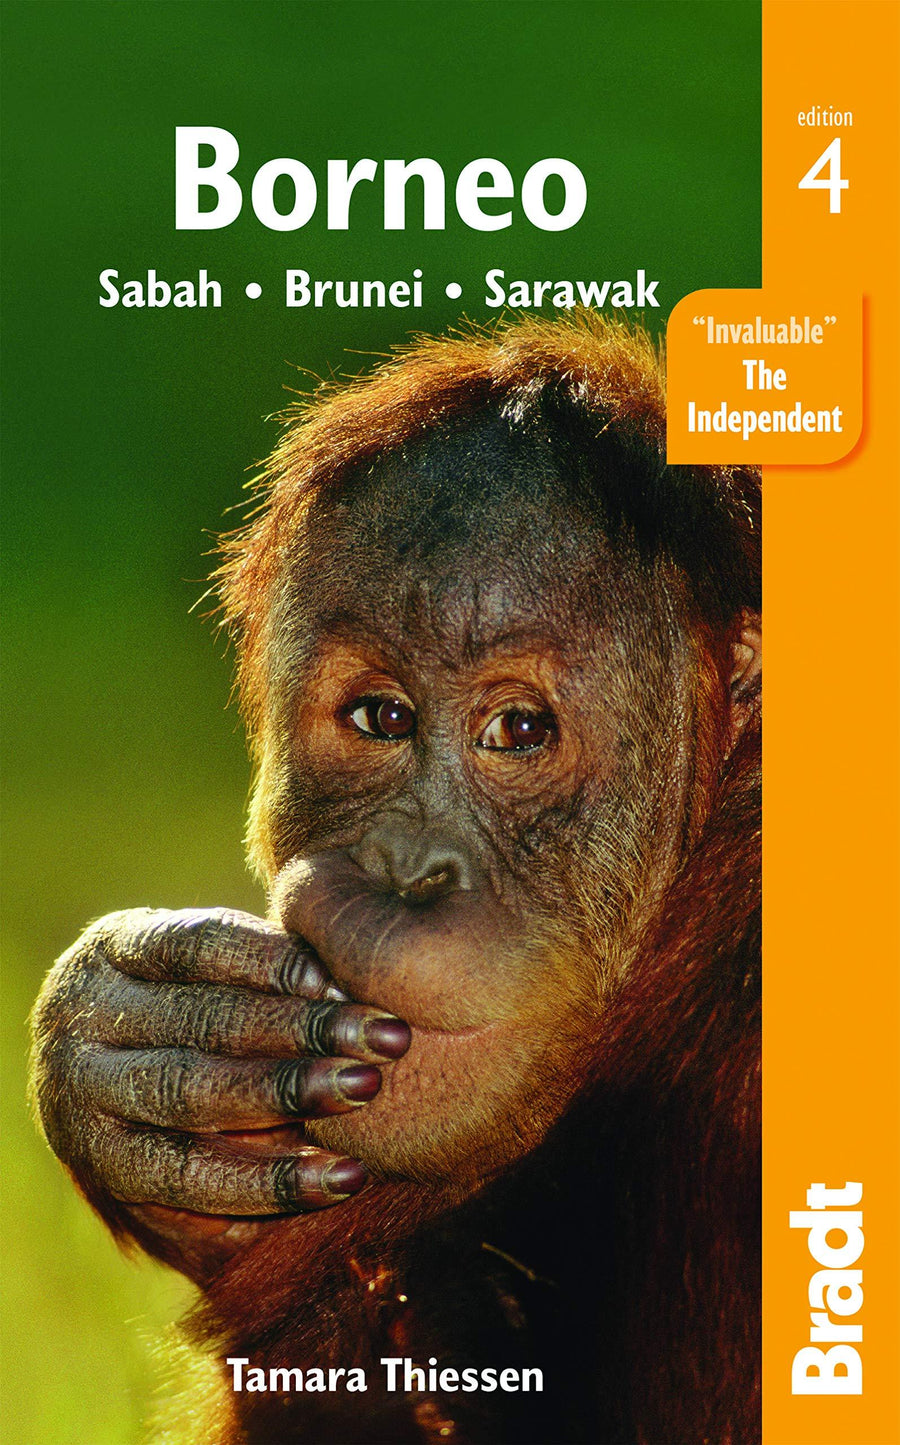 Guide de voyage (en anglais) - Borneo : Sabah, Brunei, Sarawak, édition 2020 | Bradt guide de voyage Bradt 